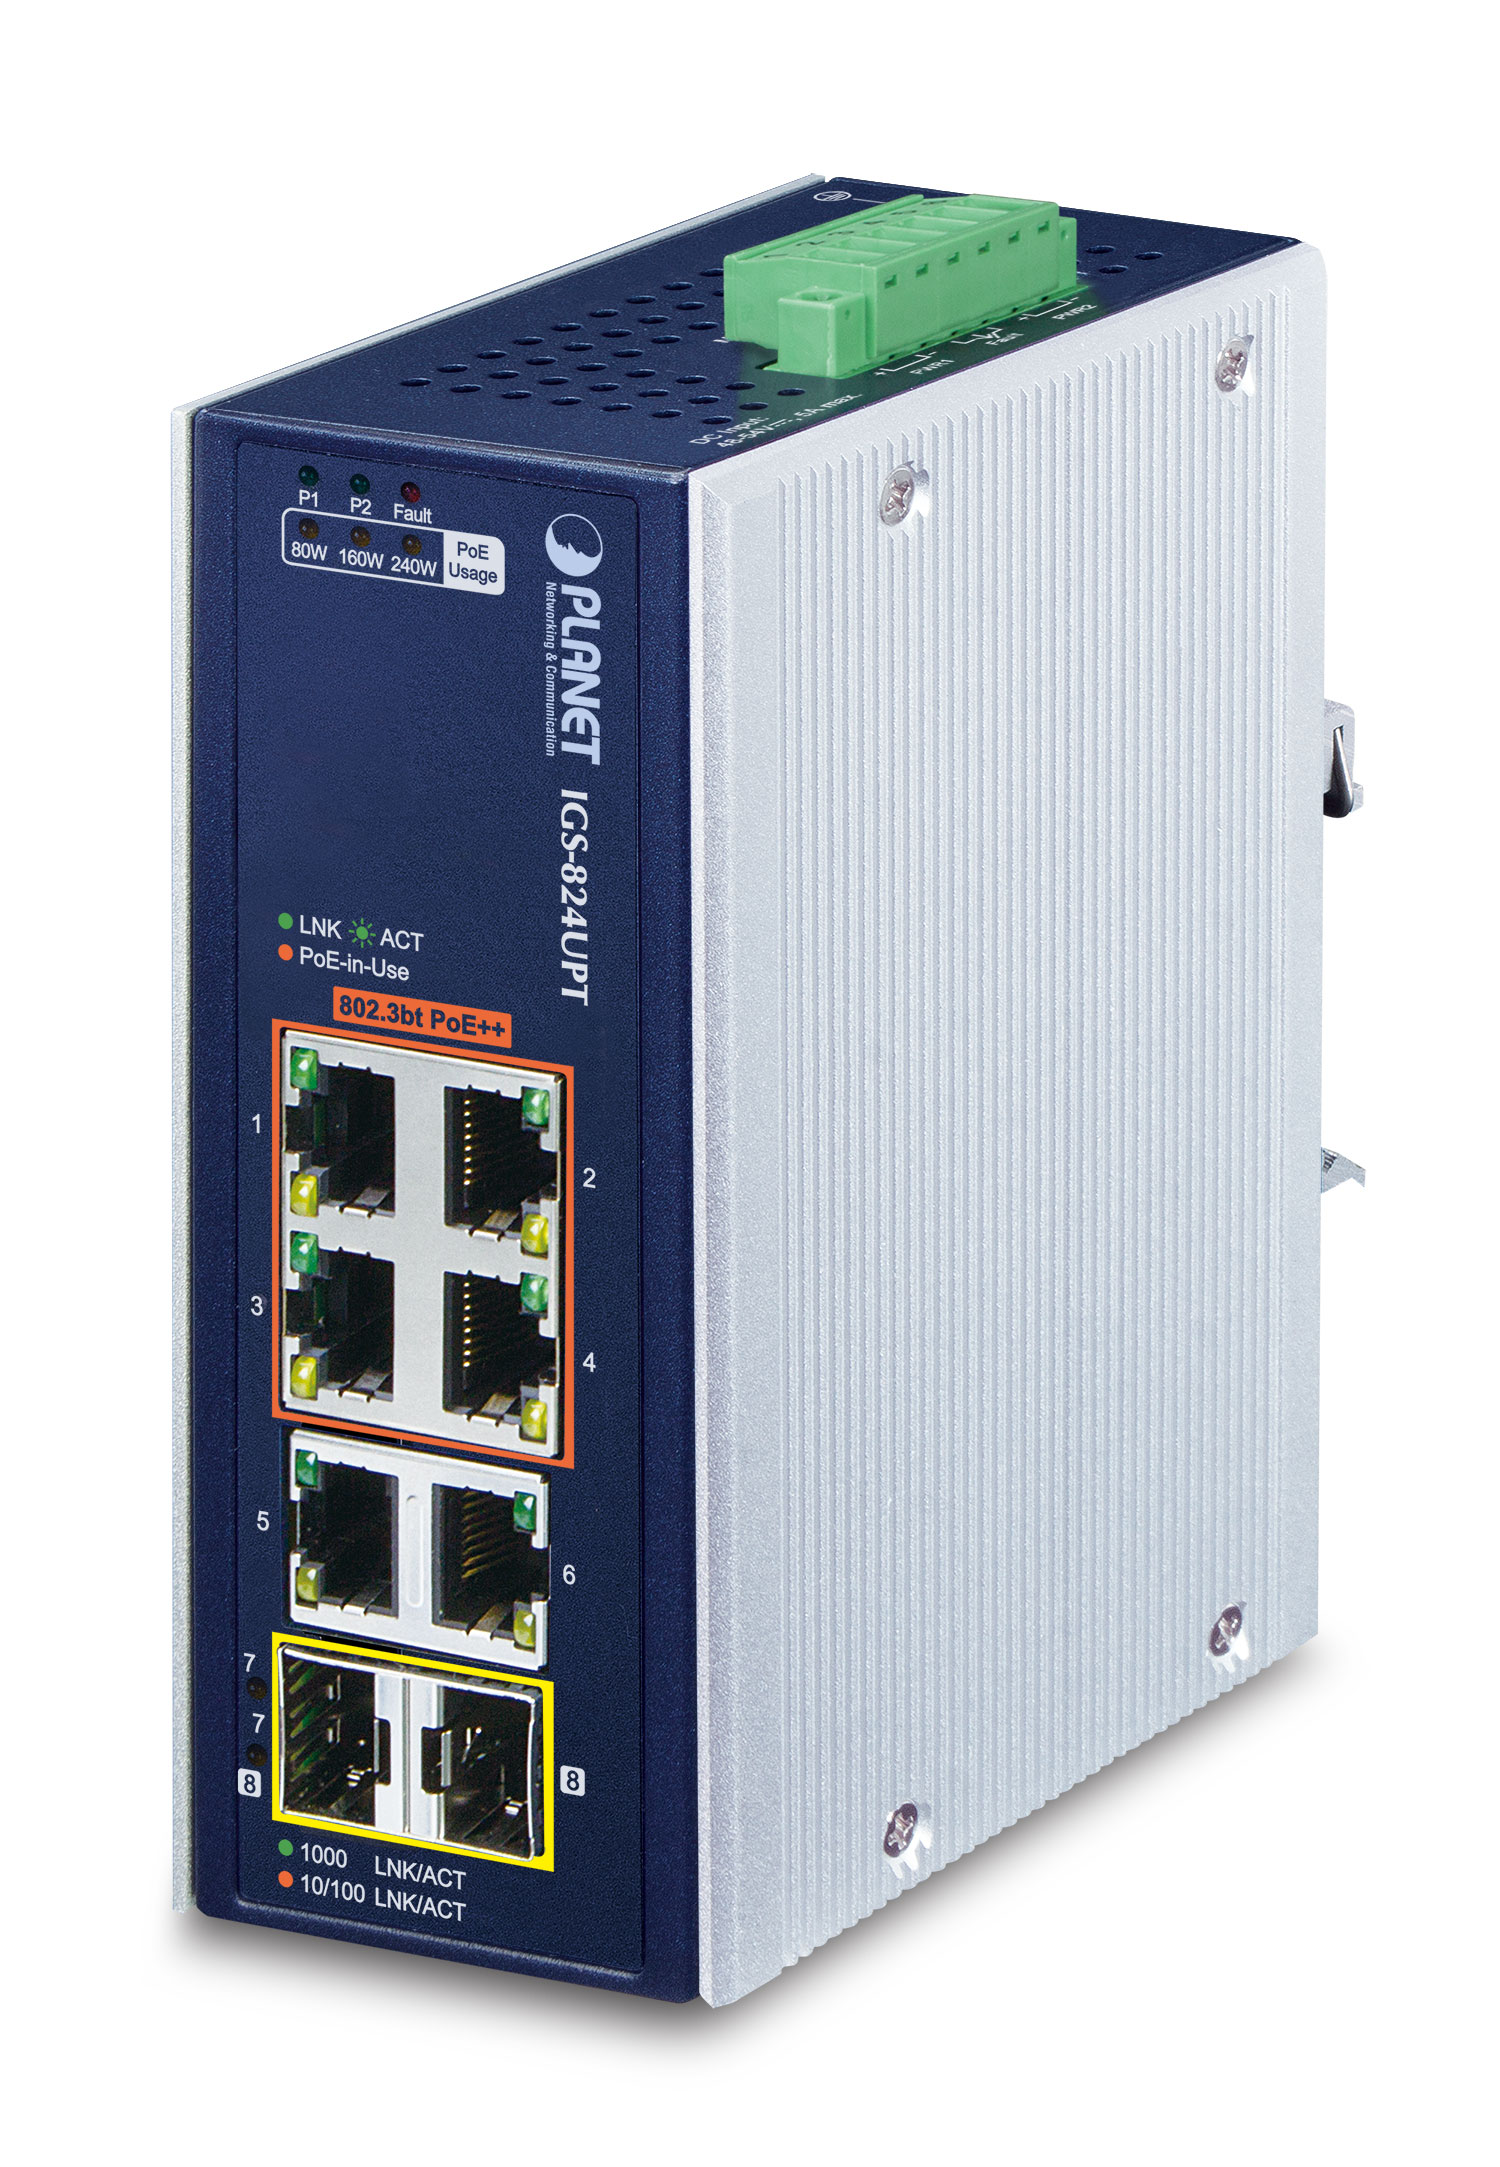 【IGS-824UPT】Industrial 4-Port 10/100/1000T 802.3bt PoE + 2-Port 10/100/1000T + 2-Port 100/1000X SFP Gigabit Ethernet Switch
